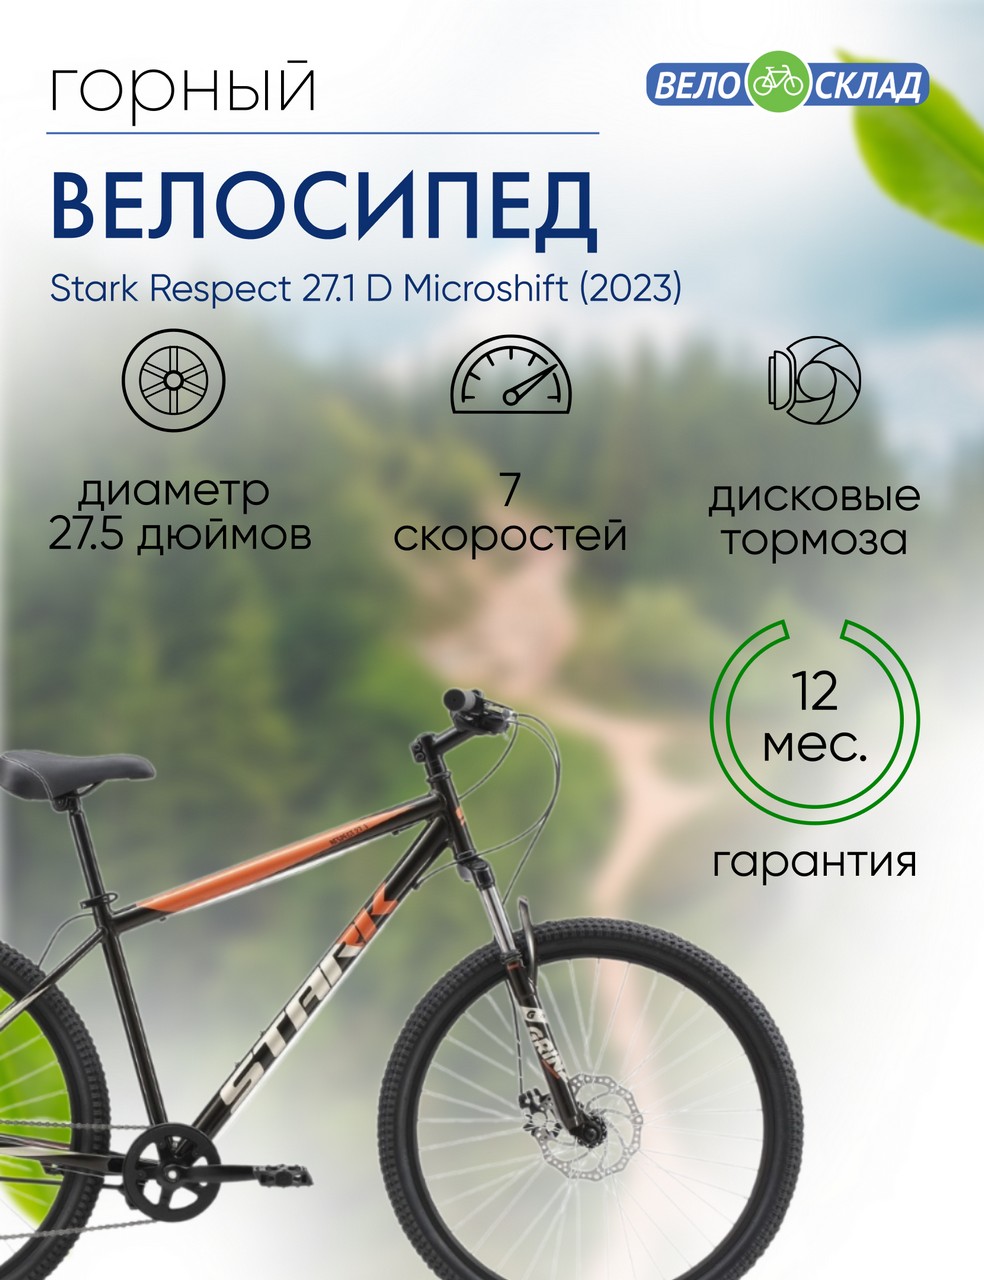 Горный велосипед Stark Respect 27.1 D Microshift, год 2023, цвет Черный-Оранжевый, ростовка 16